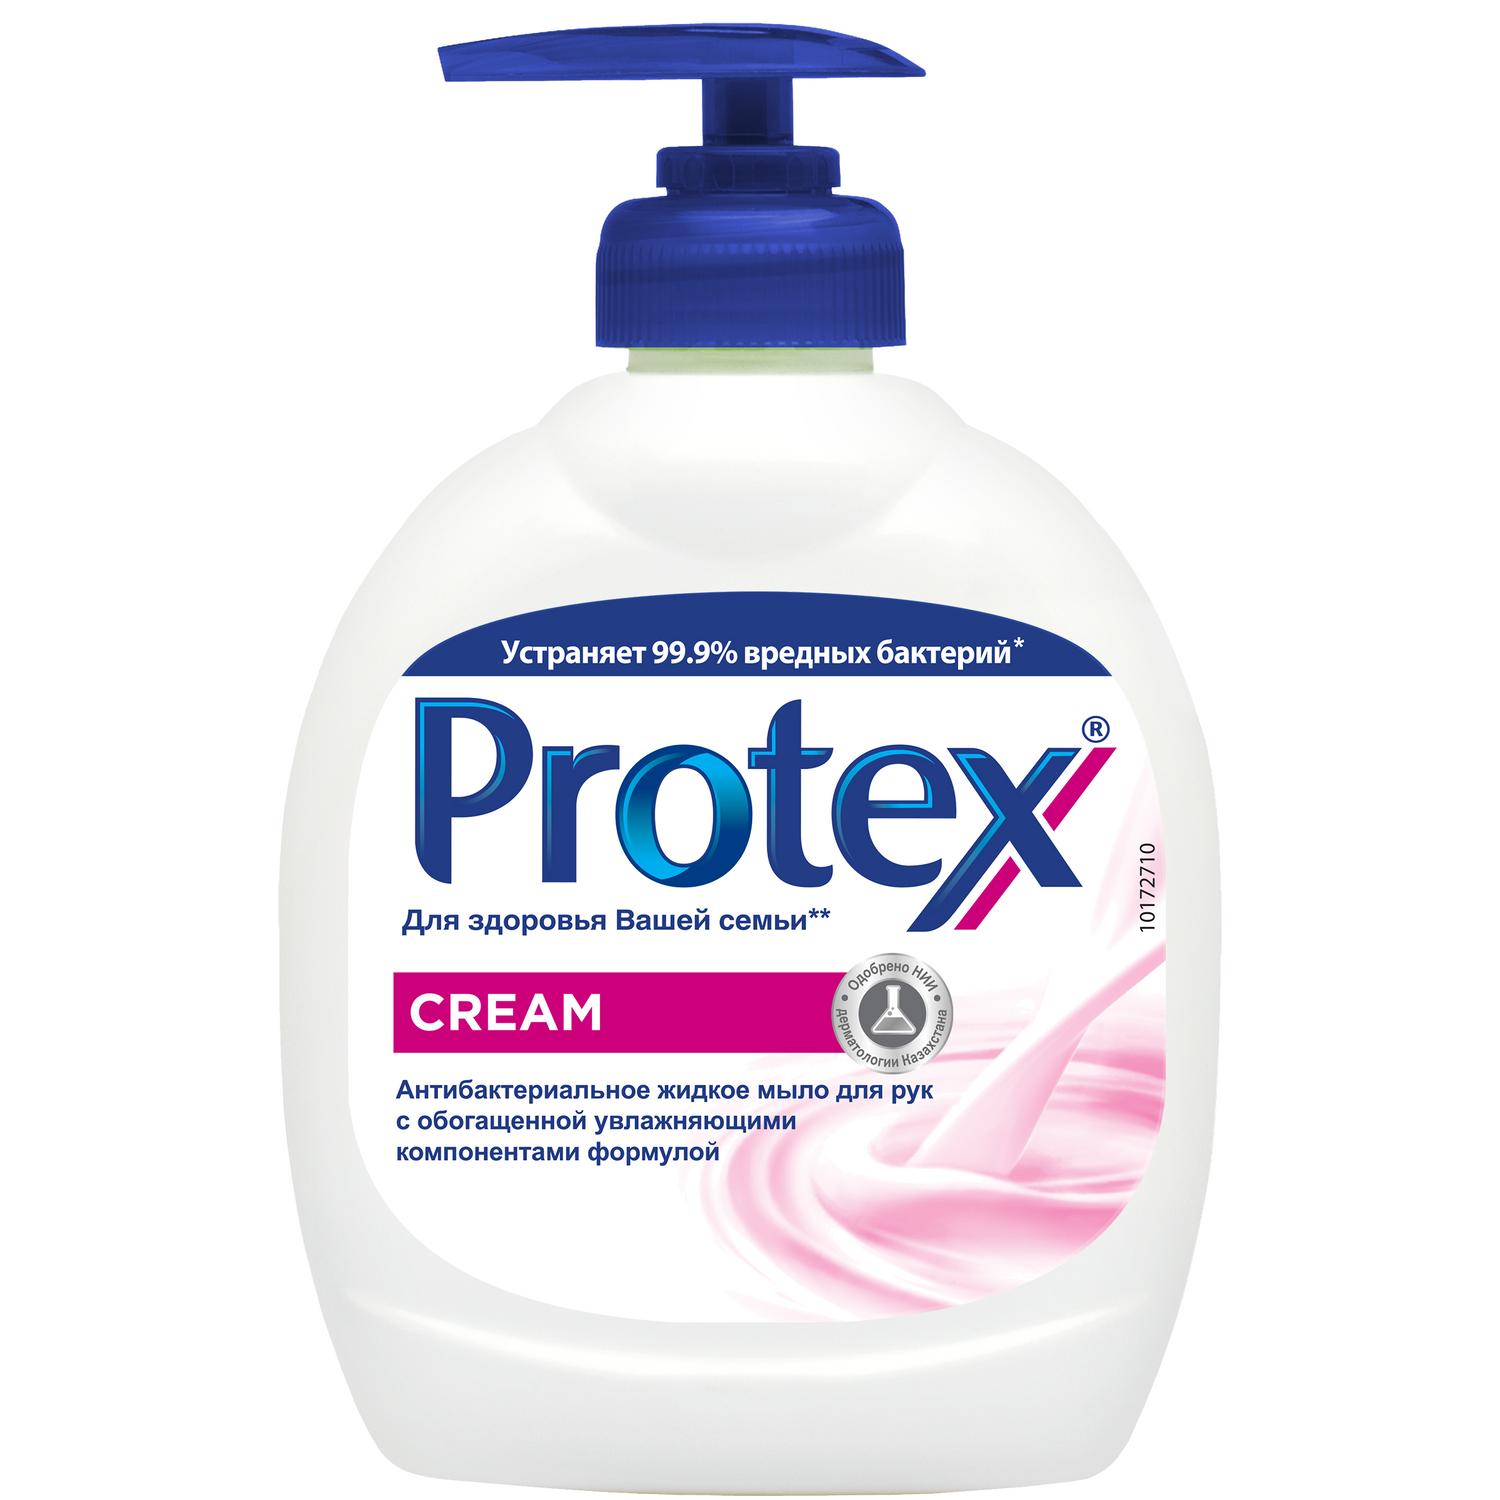 Protex Антибактериальное жидкое мыло для рук Cream, 300 мл мыло туалетное protex fresh антибактериальное 90 г